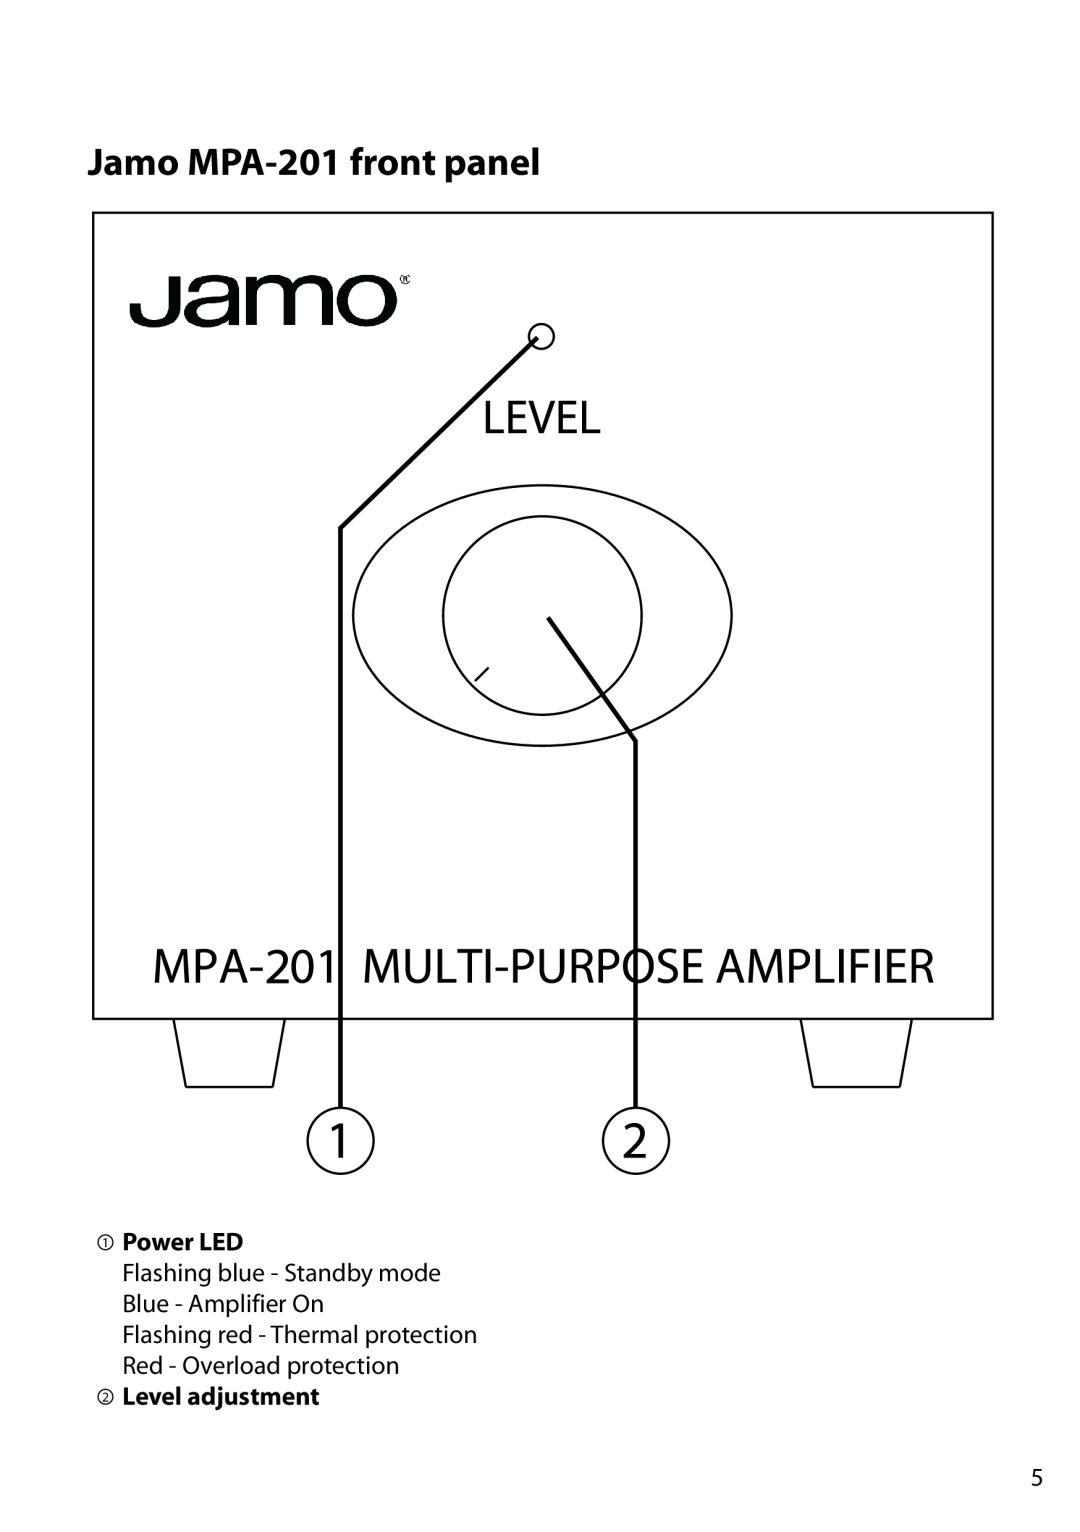 JAMO manual Jamo MPA-201front panel, 1Power LED, 2Level adjustment 